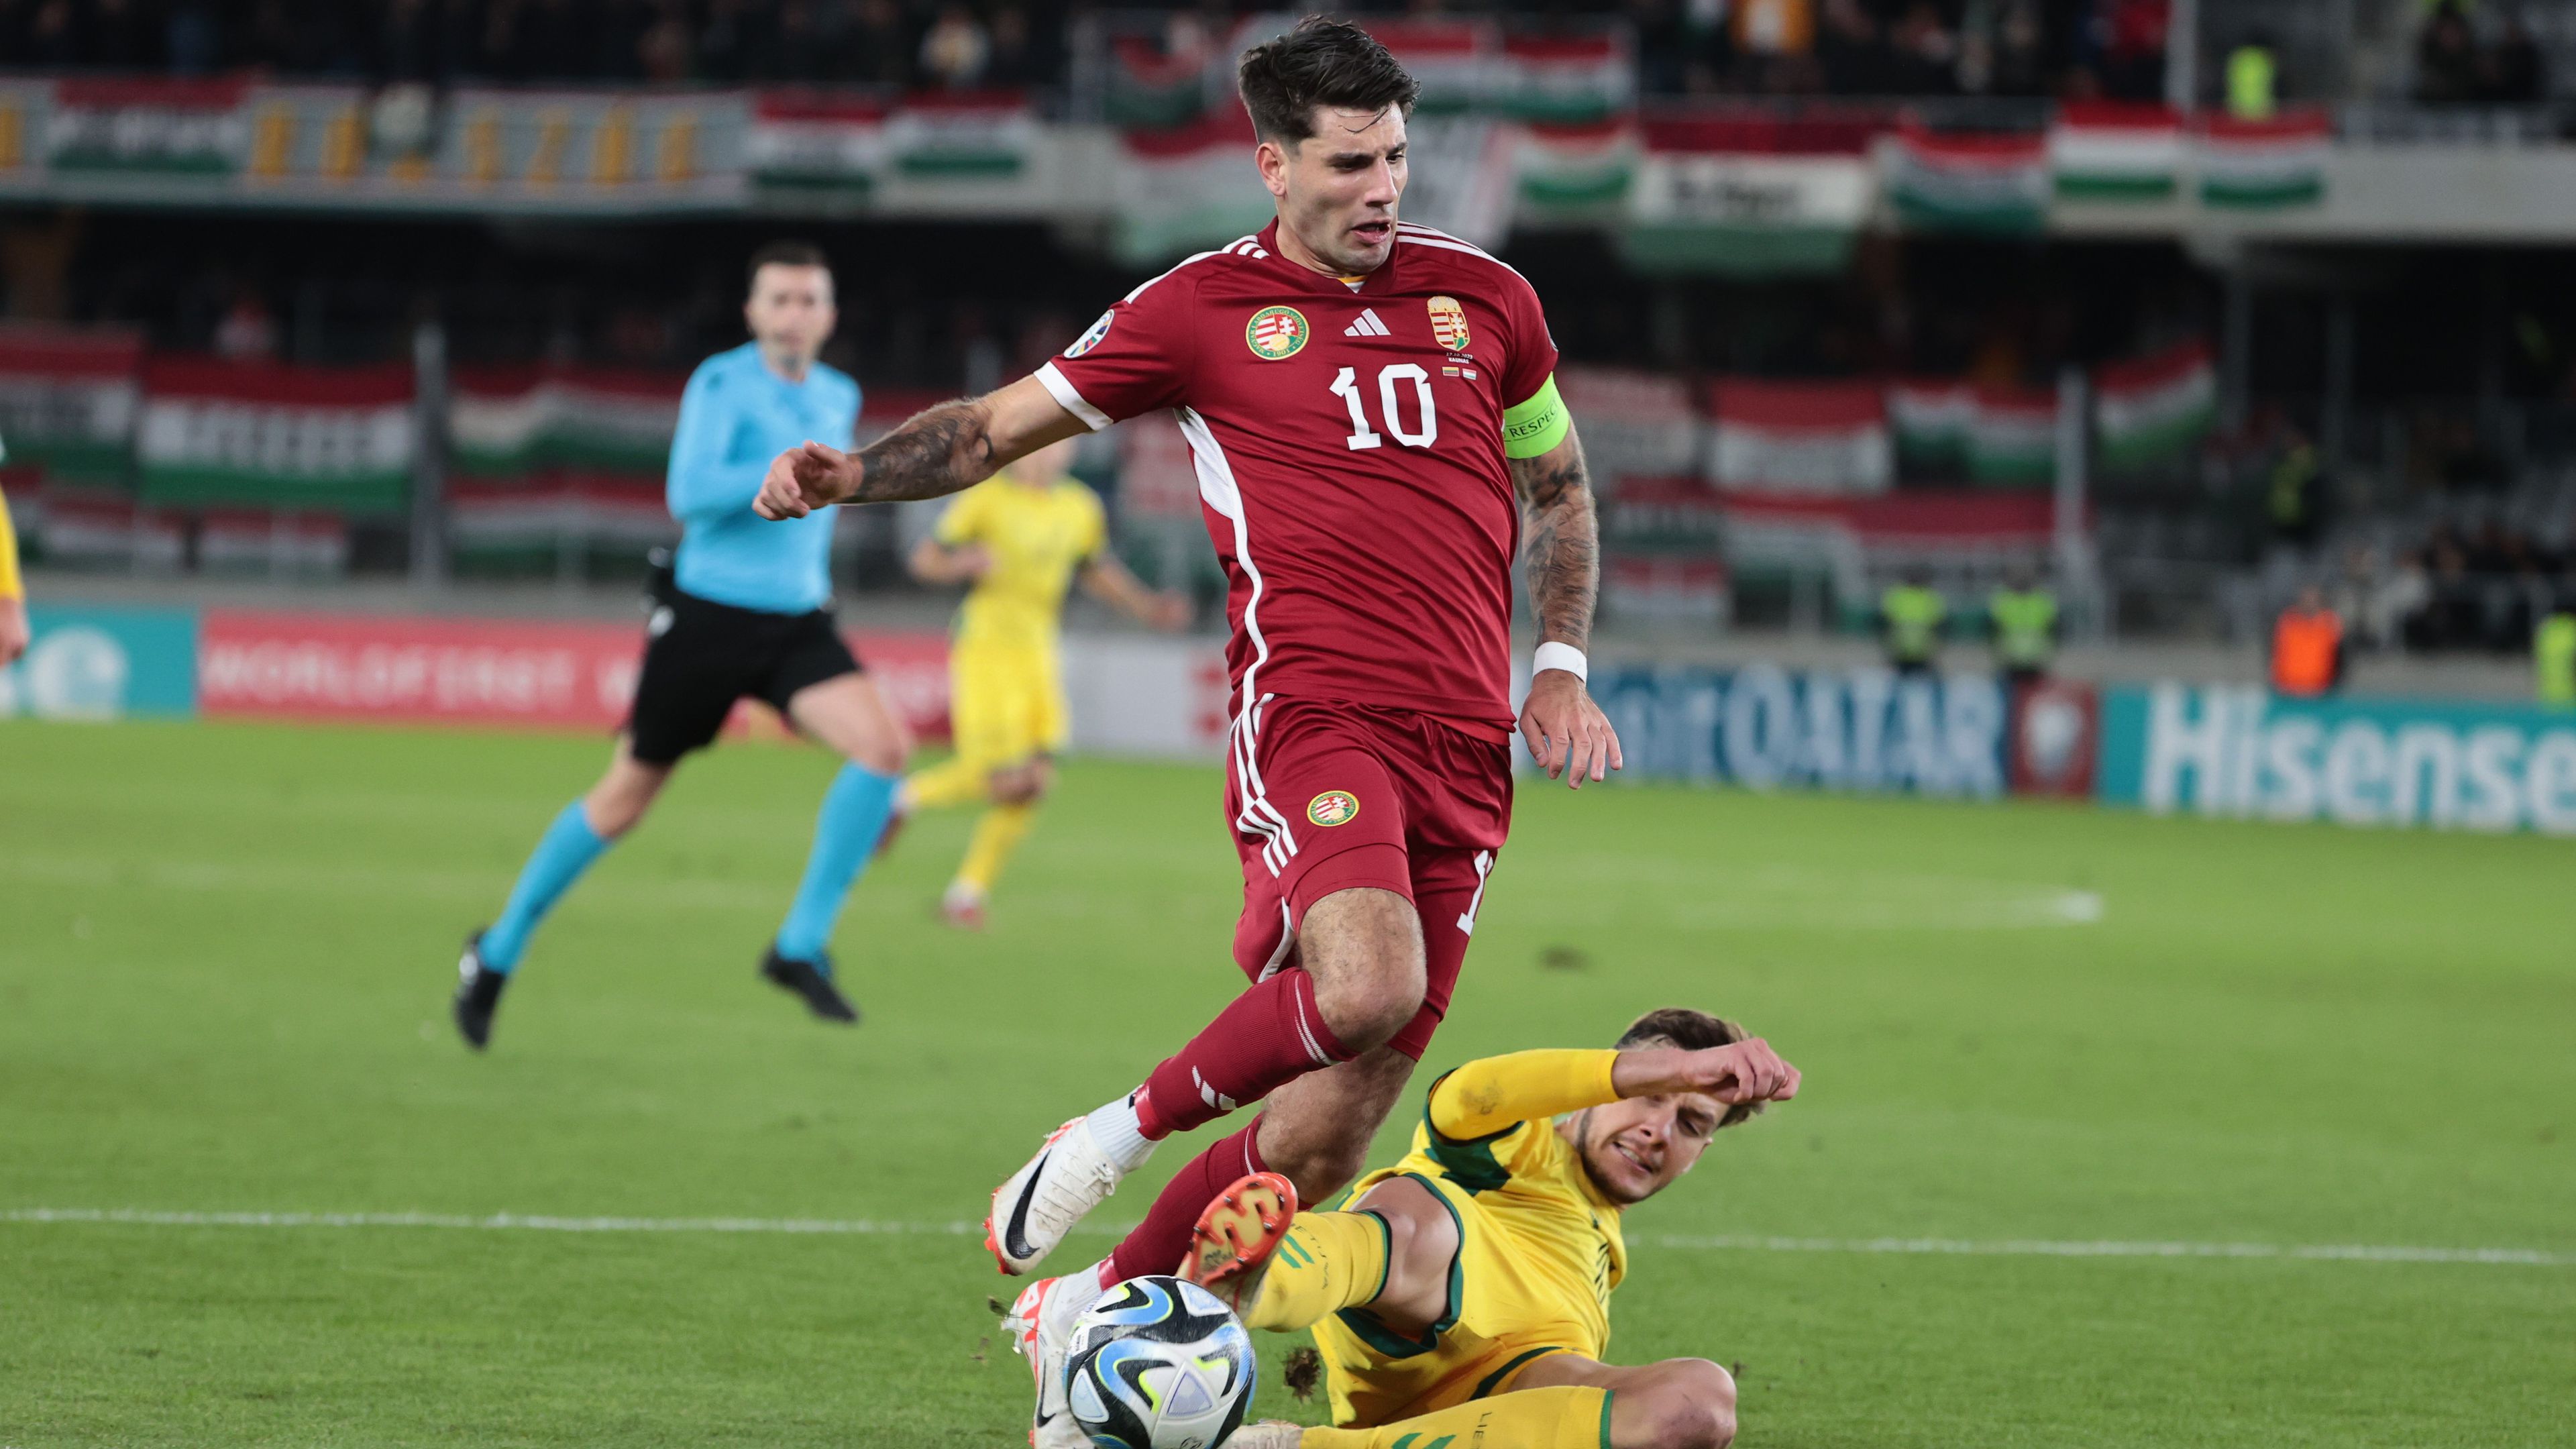 Szoboszlai Dominik tizenegyesből szerzett gólt Litvánia otthonában, a magyar válogatott pedig kétgólos hátrányból mentette döntetlenre a meccset Fotó: Czerkl Gábor